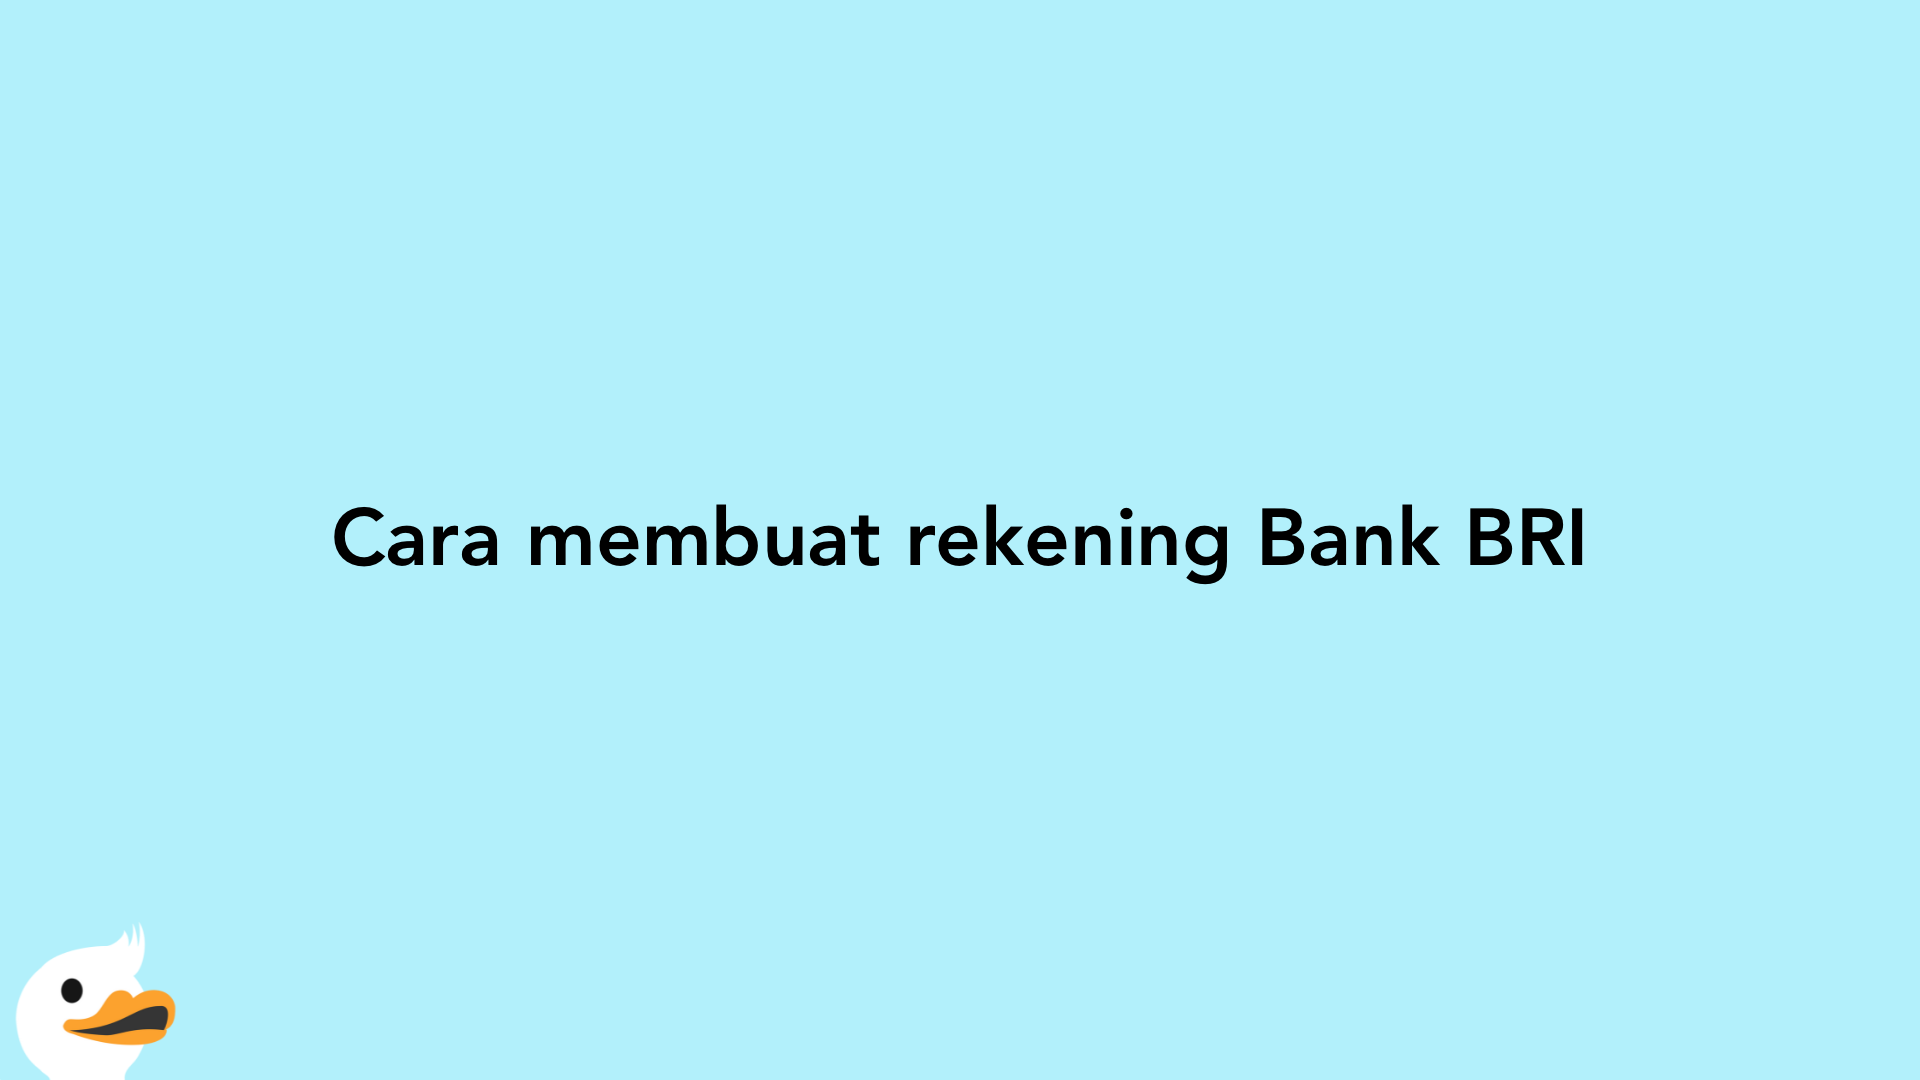 Cara membuat rekening Bank BRI